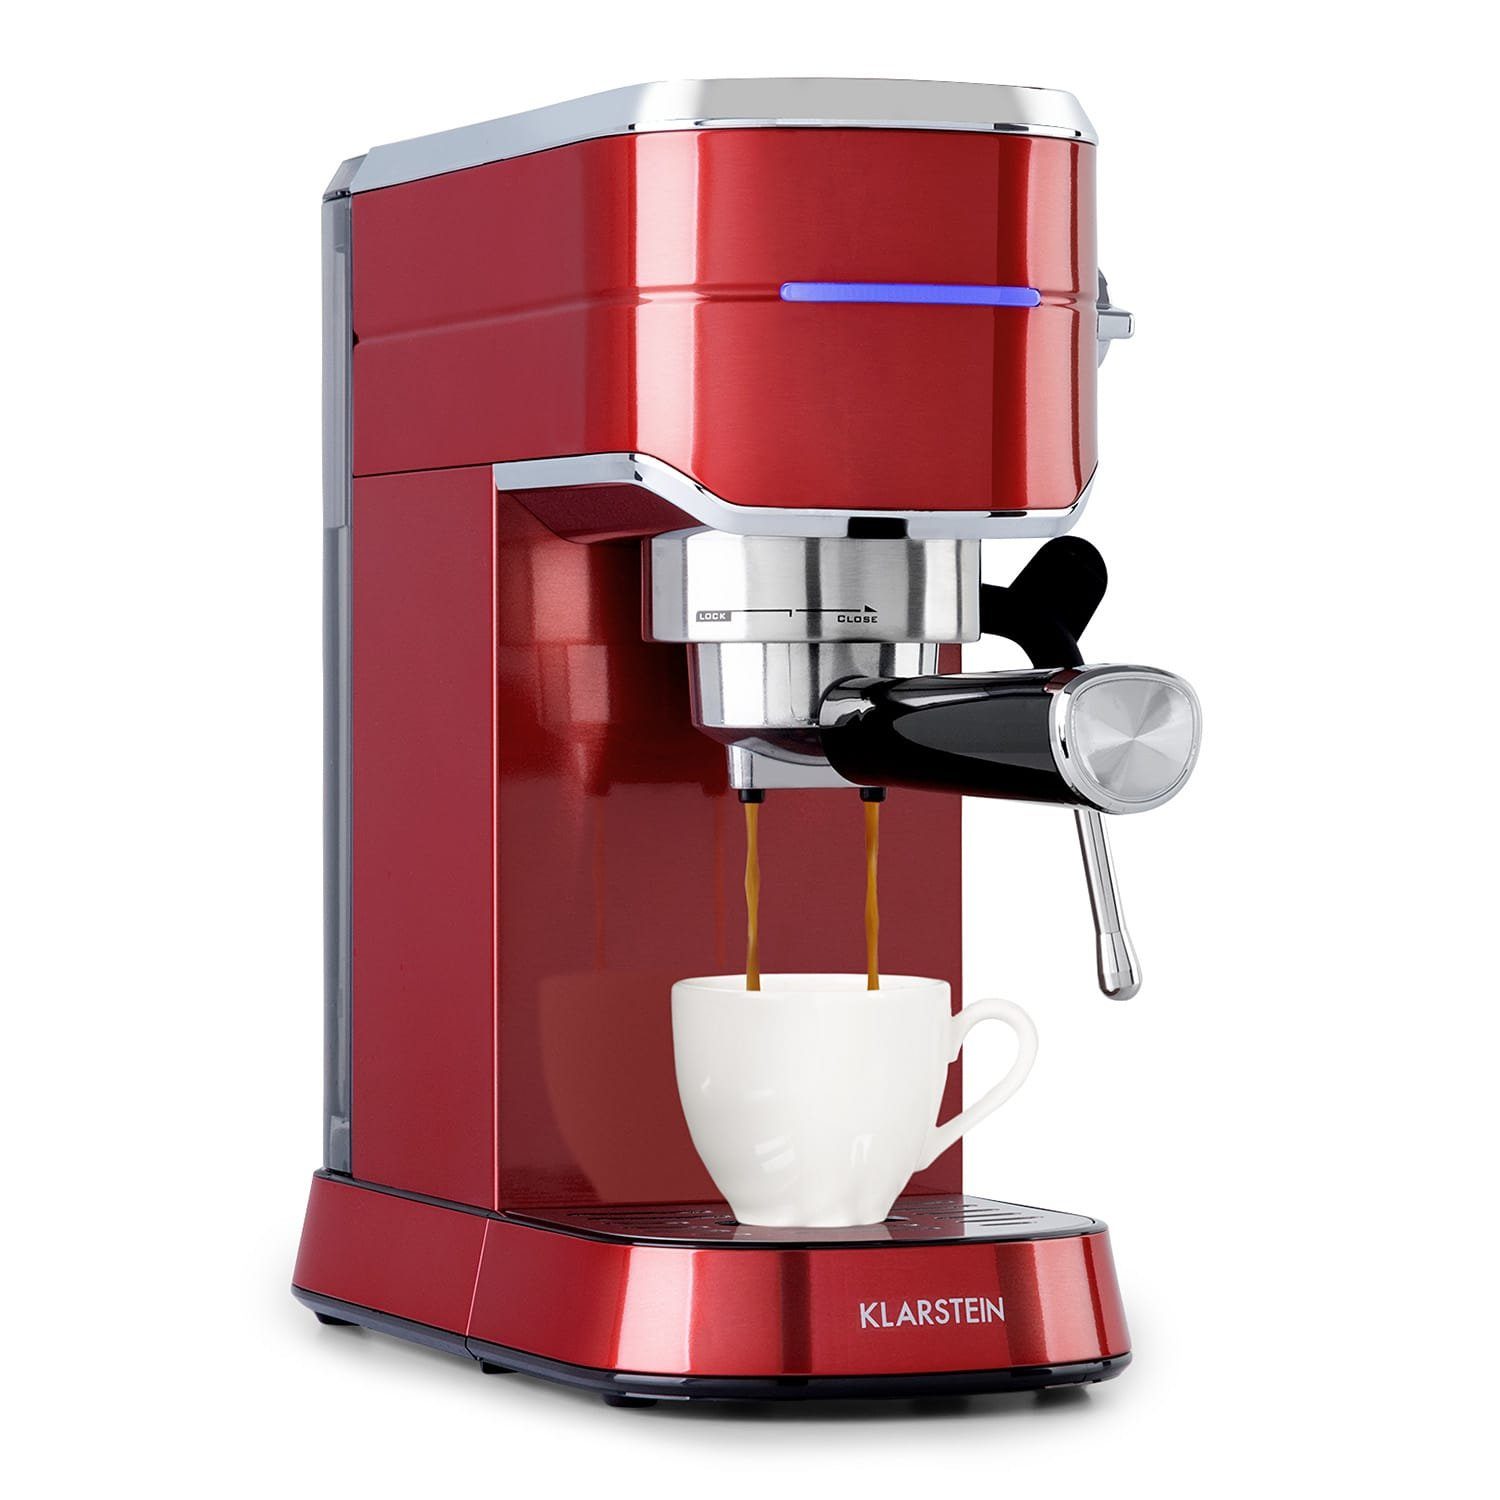 Klarstein Filterkaffeemaschine Futura, Für jede Tasse: Stoppfunktion für die richtige Menge